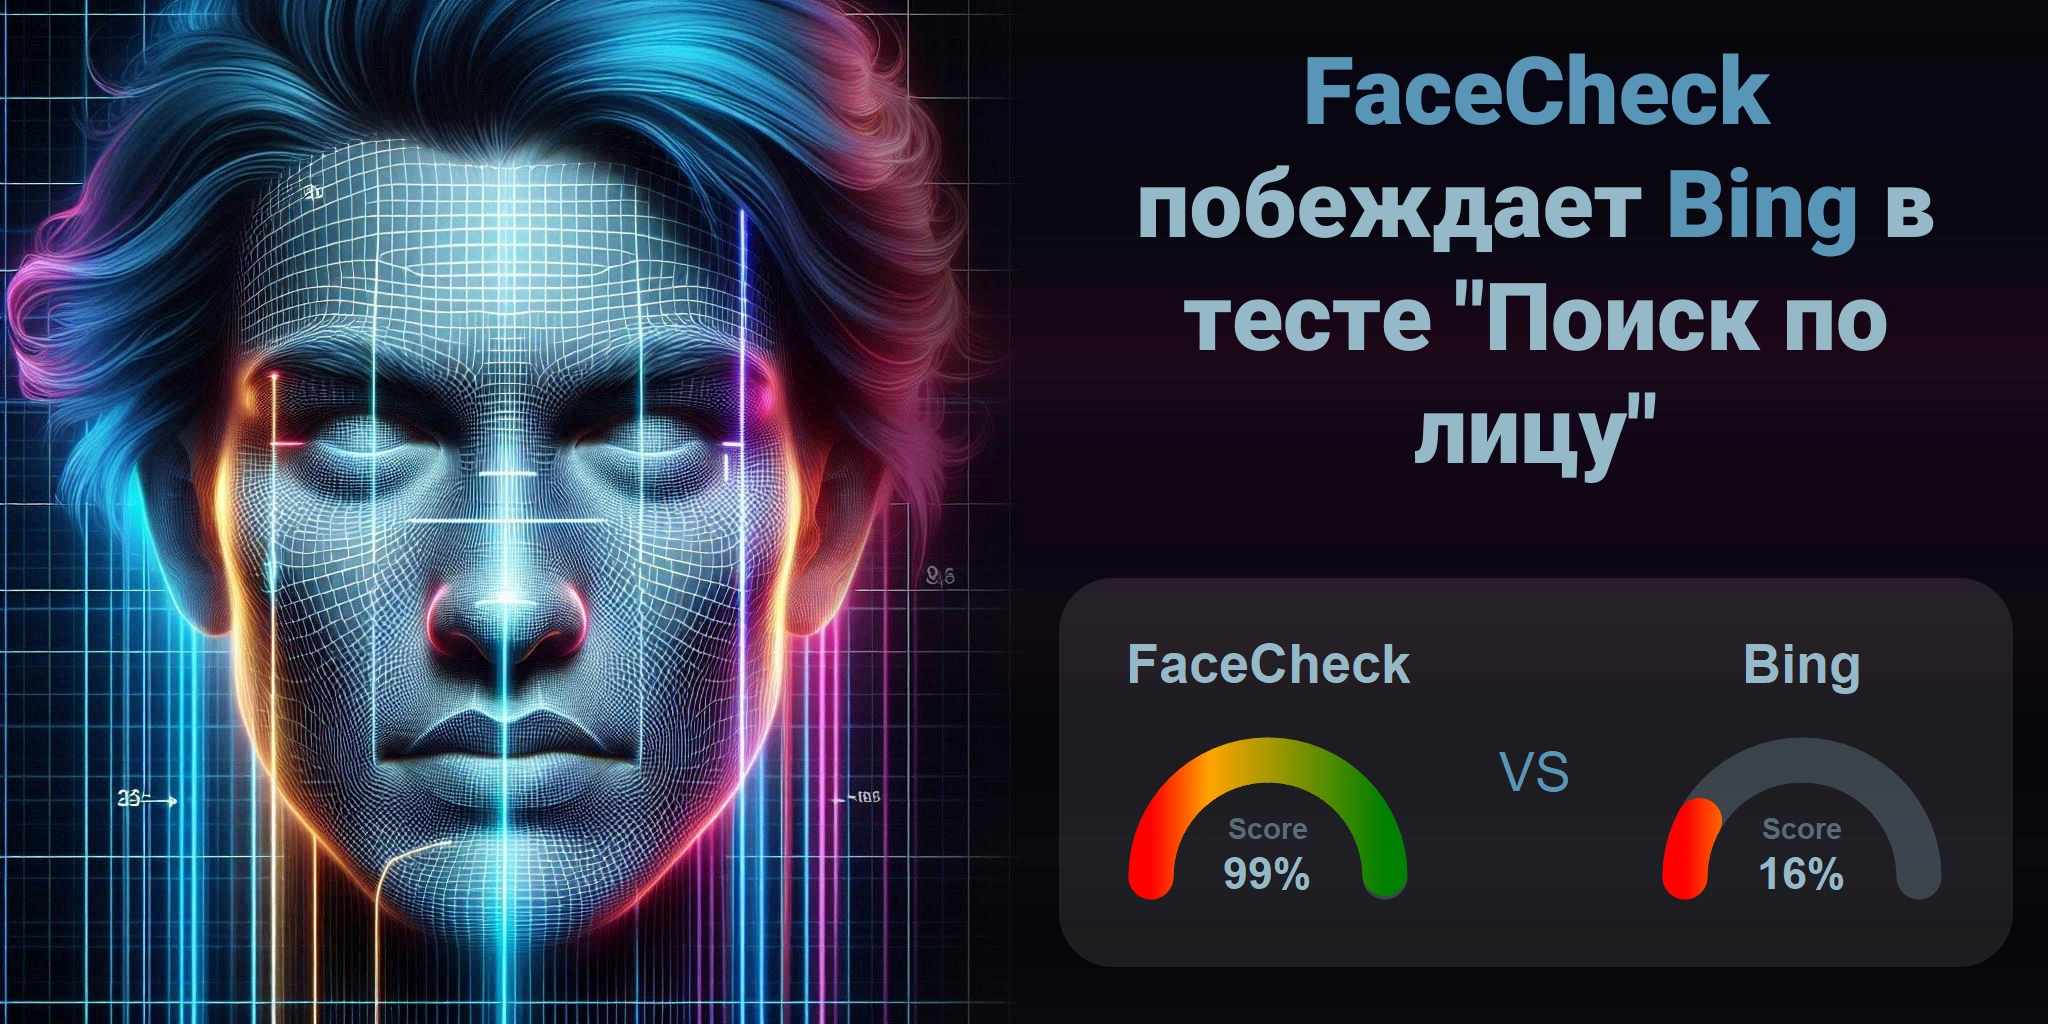 Что лучше для поиска по лицам: <br>FaceCheck или Bing?